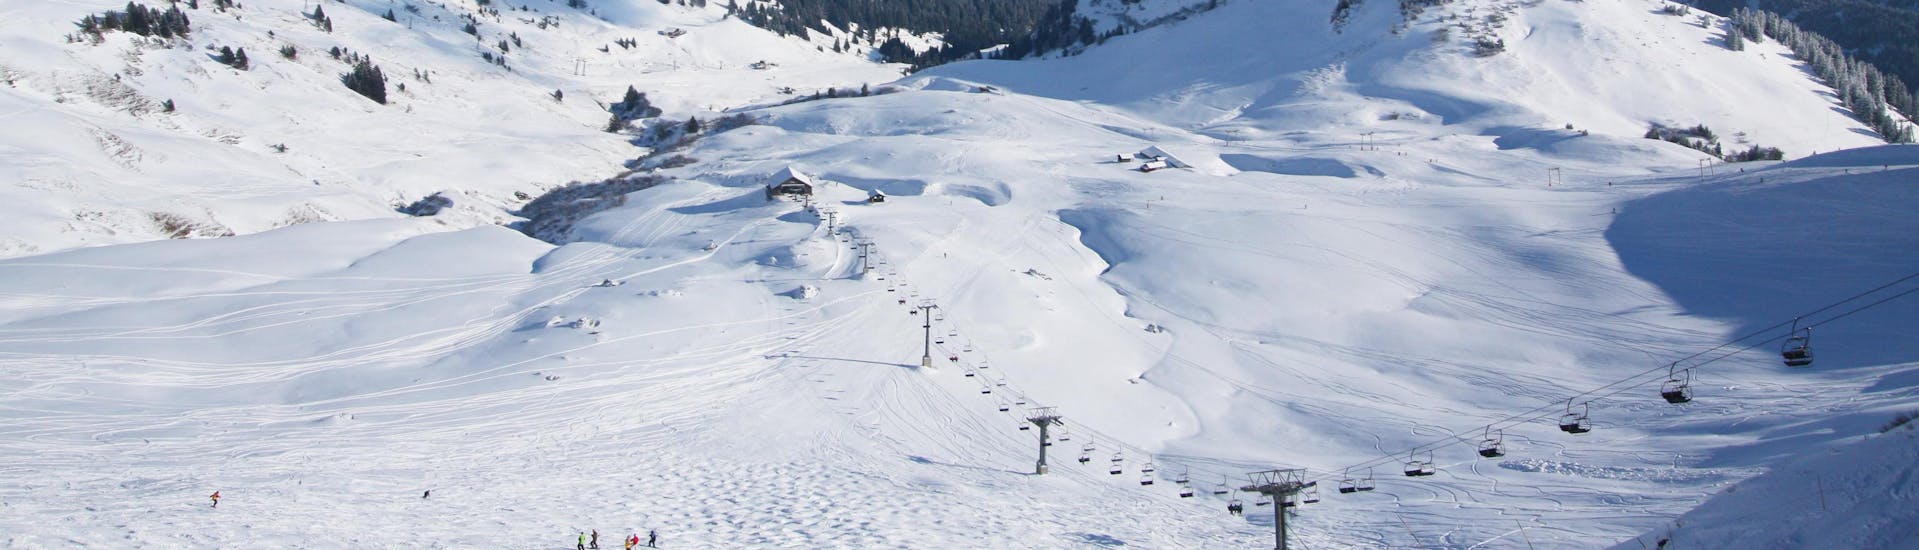 Ein Blick auf die verschneiten Pisten des Schweizer Skigebiets Les Crosets in den Portes du Soleil, wo die örtlichen Skischulen eine breite Palette von Skikursen für diejenigen anbieten, die das Skifahren lernen möchten.